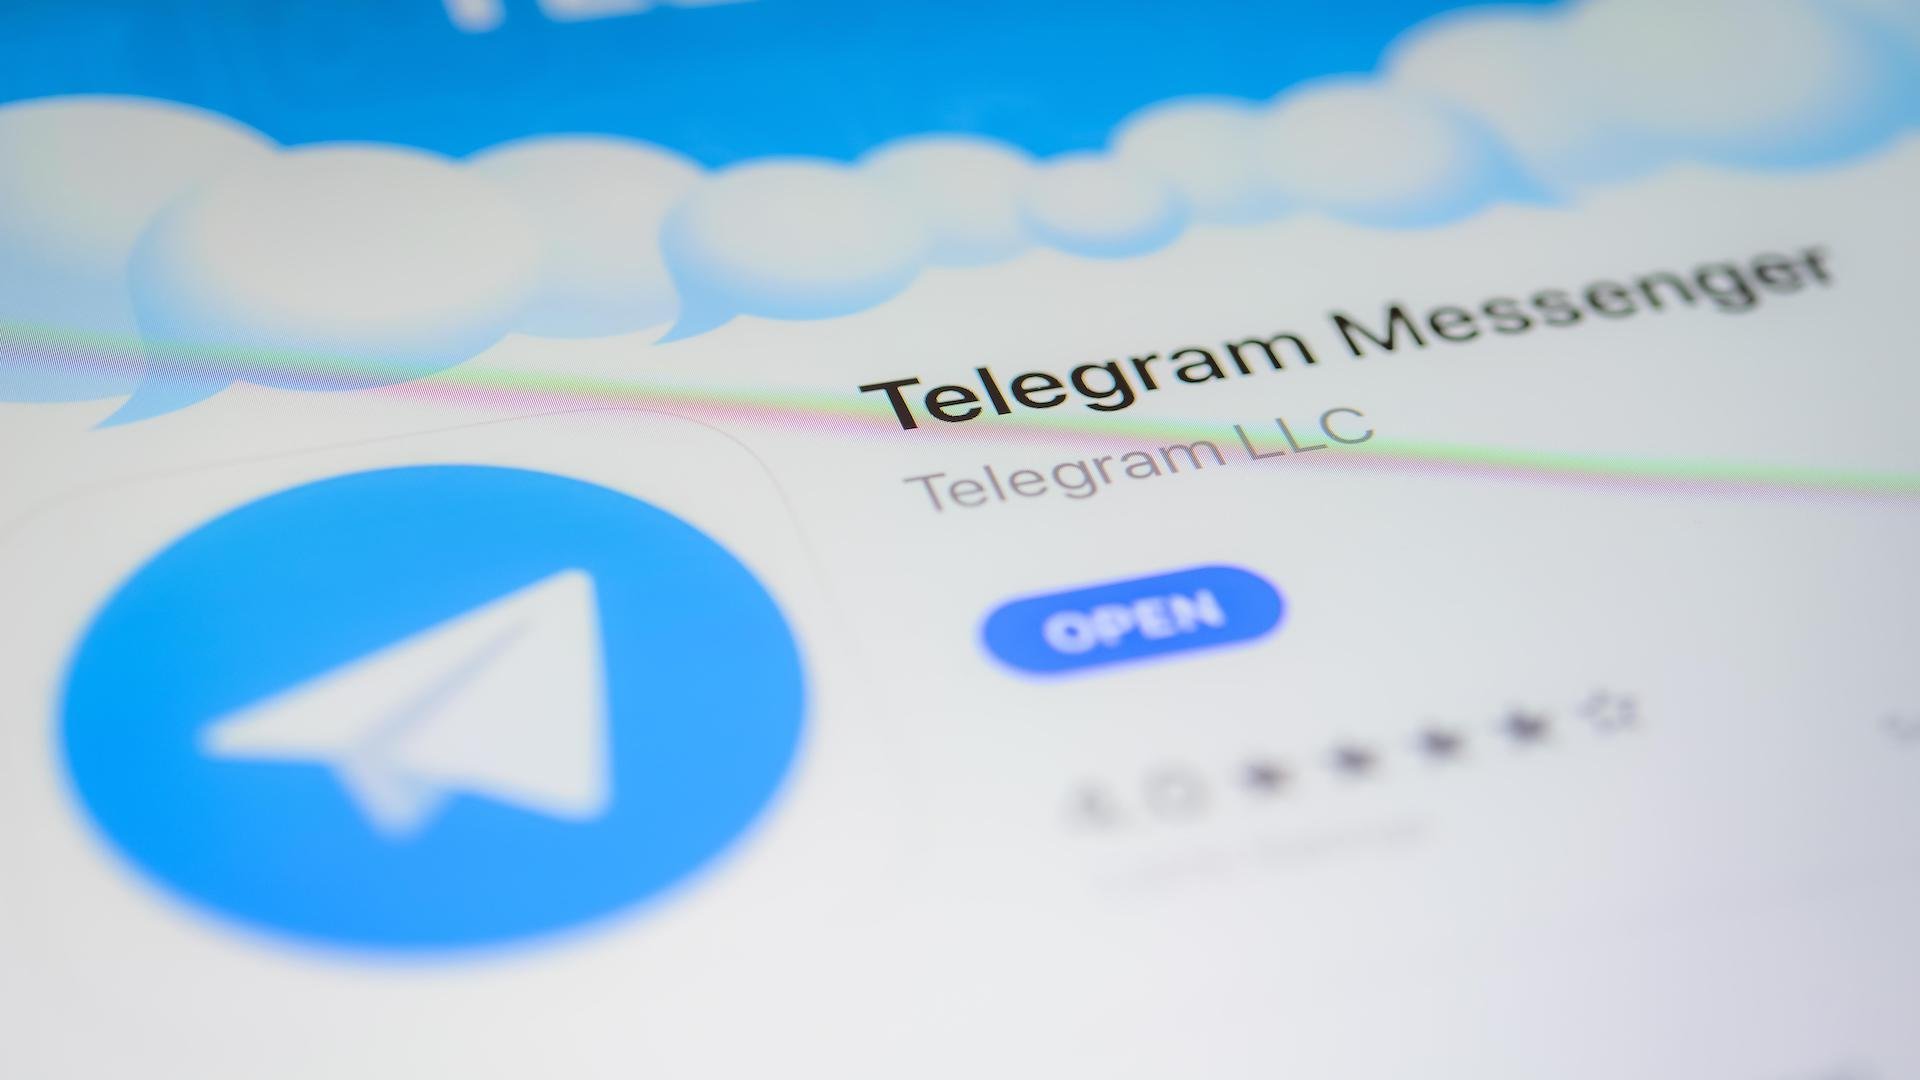 Обновить телеграмм до последней версии на андроид бесплатно русском с официального сайта фото 100